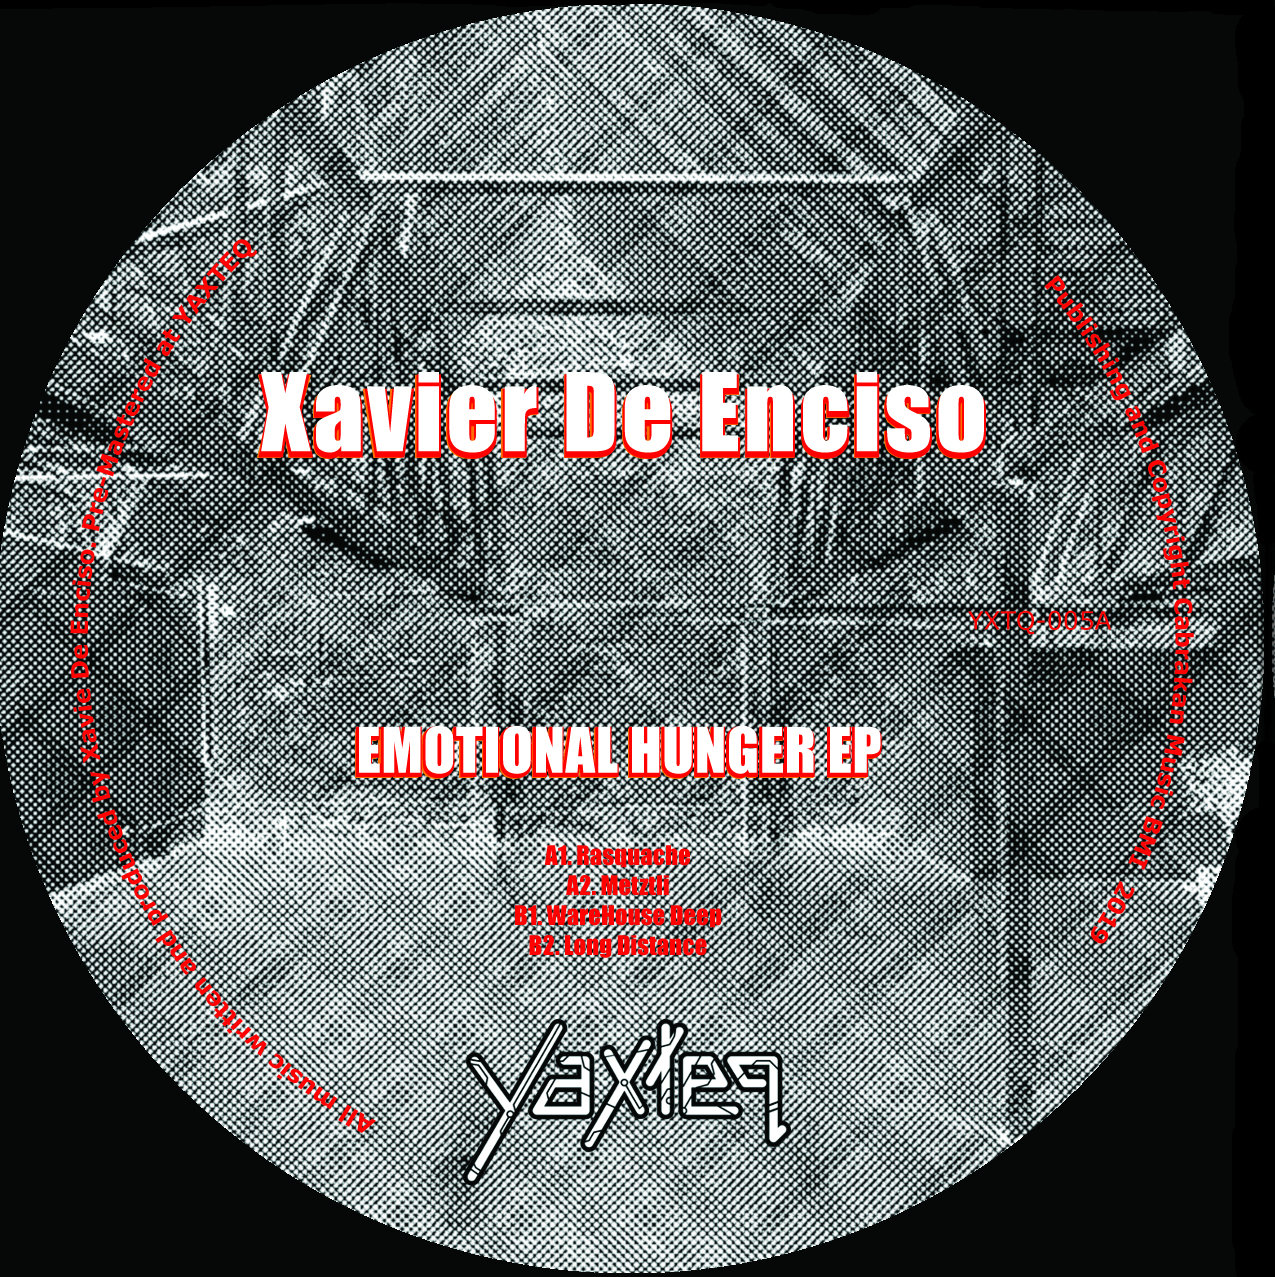 Xavier De Enciso/EMOTIONAL HUNGER EP 12"